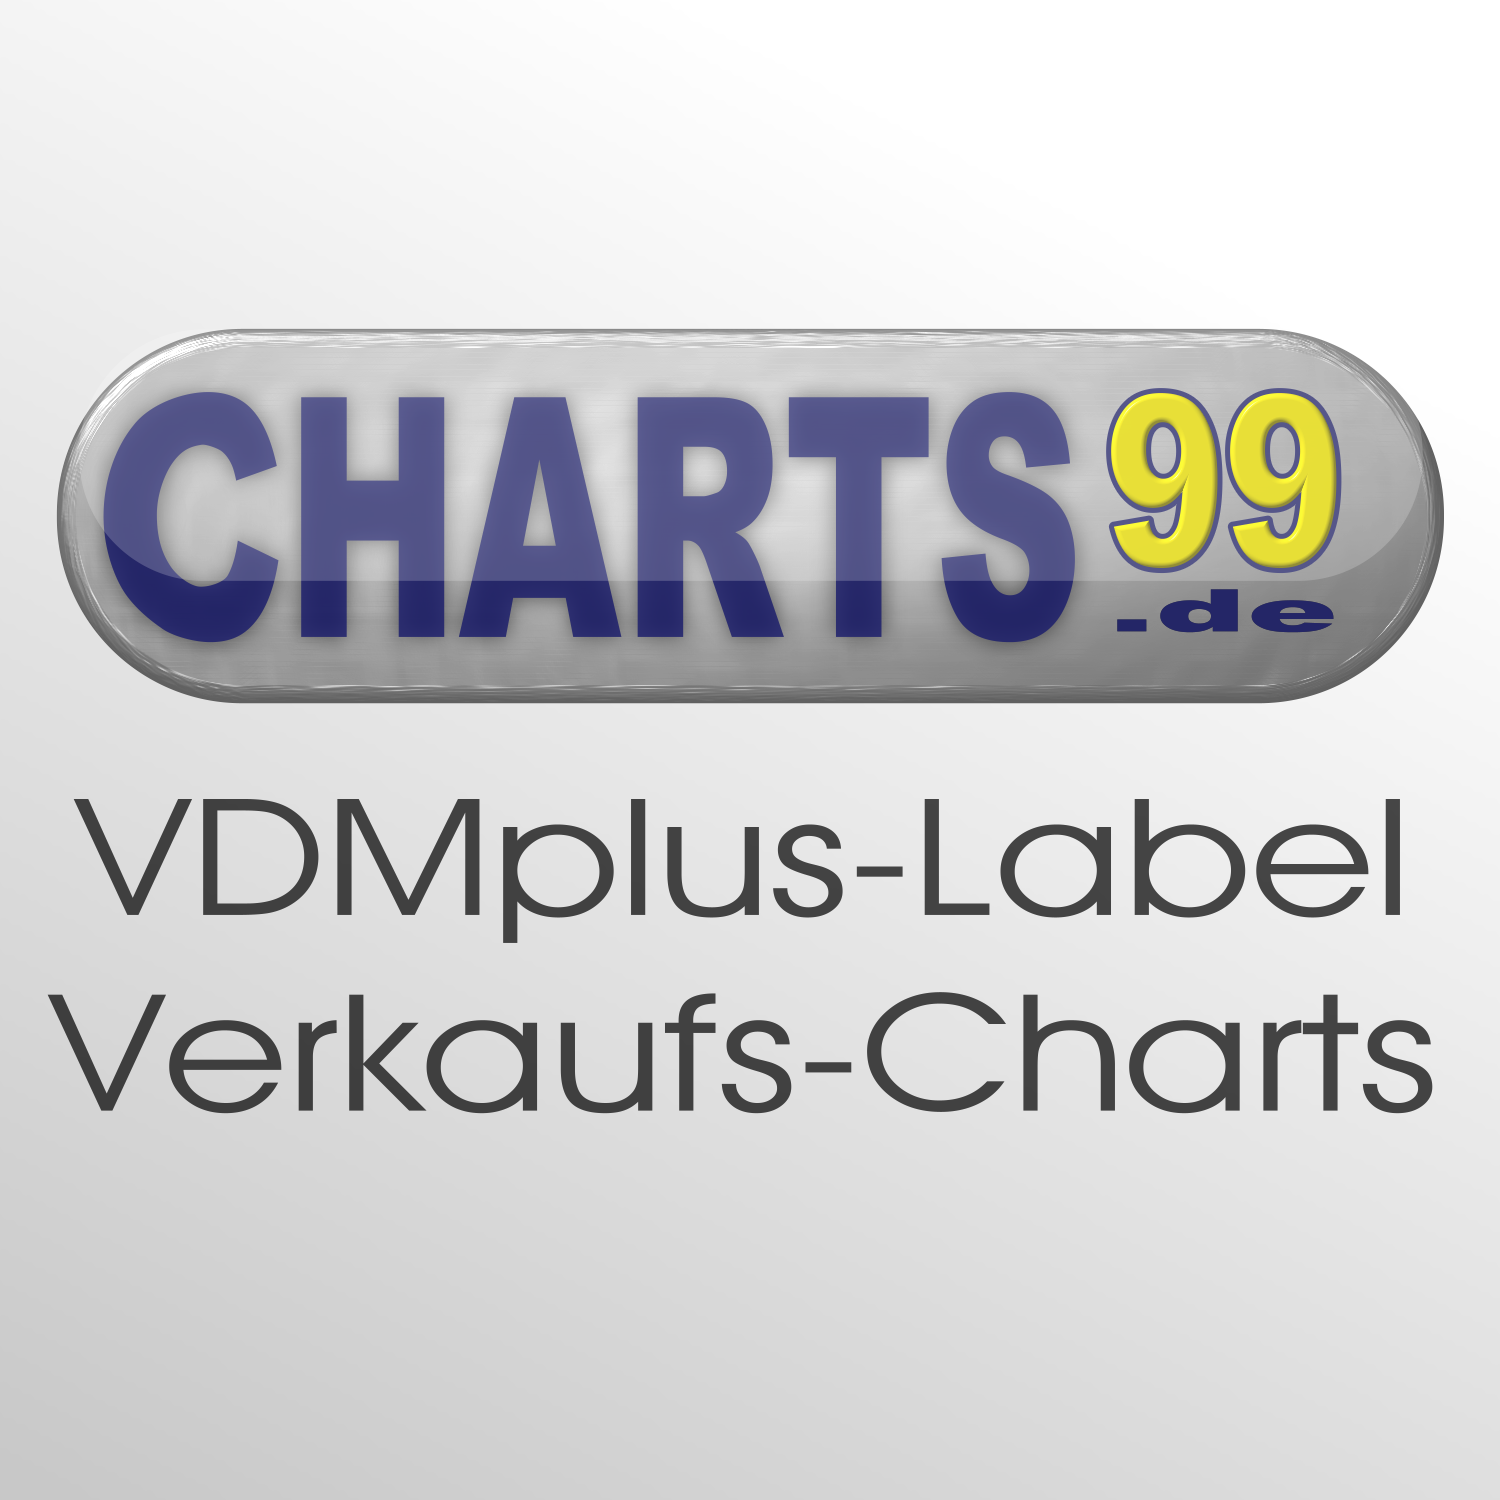 (c) Charts99.de